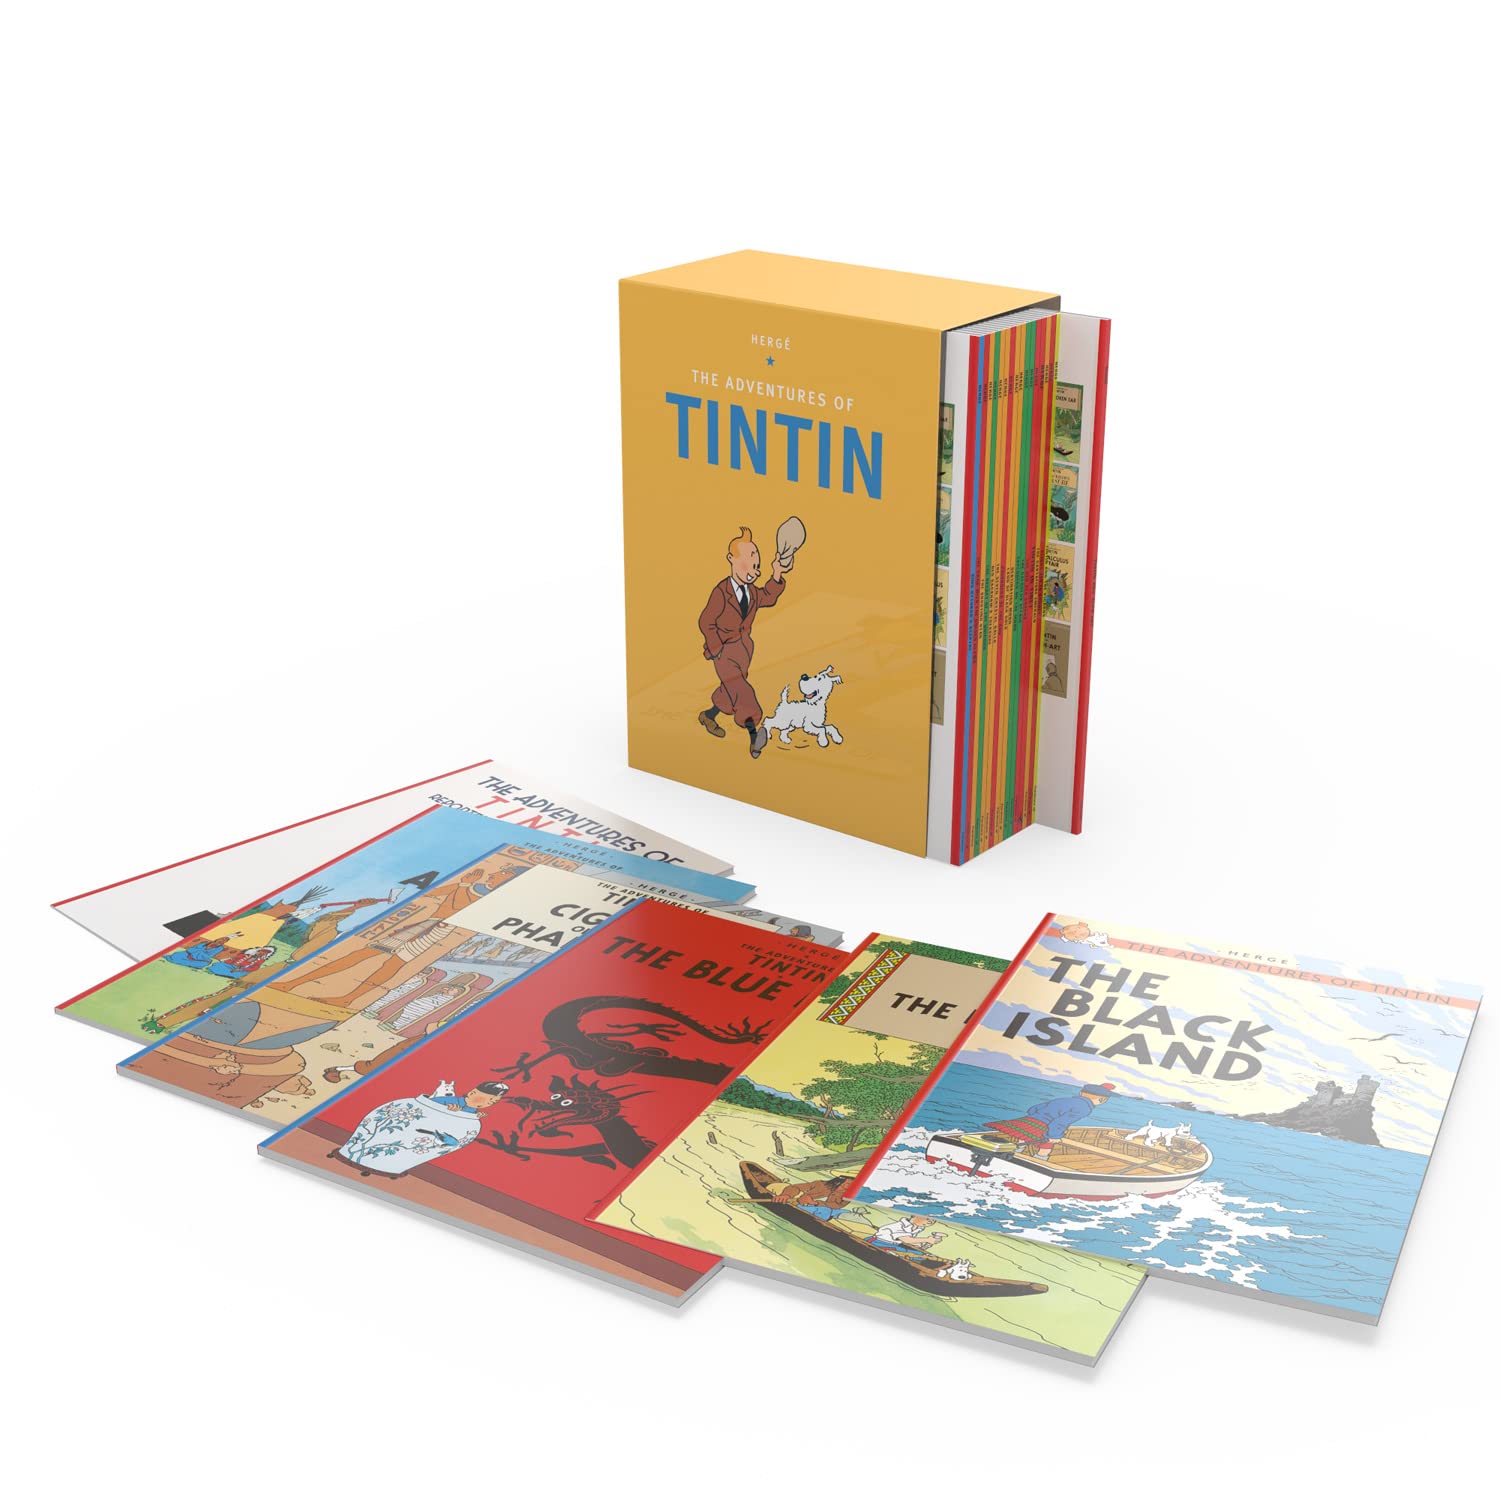 En Tintin-låda med flera böcker som The Black Island och The Blue Lotus som sitter med framsidan uppåt